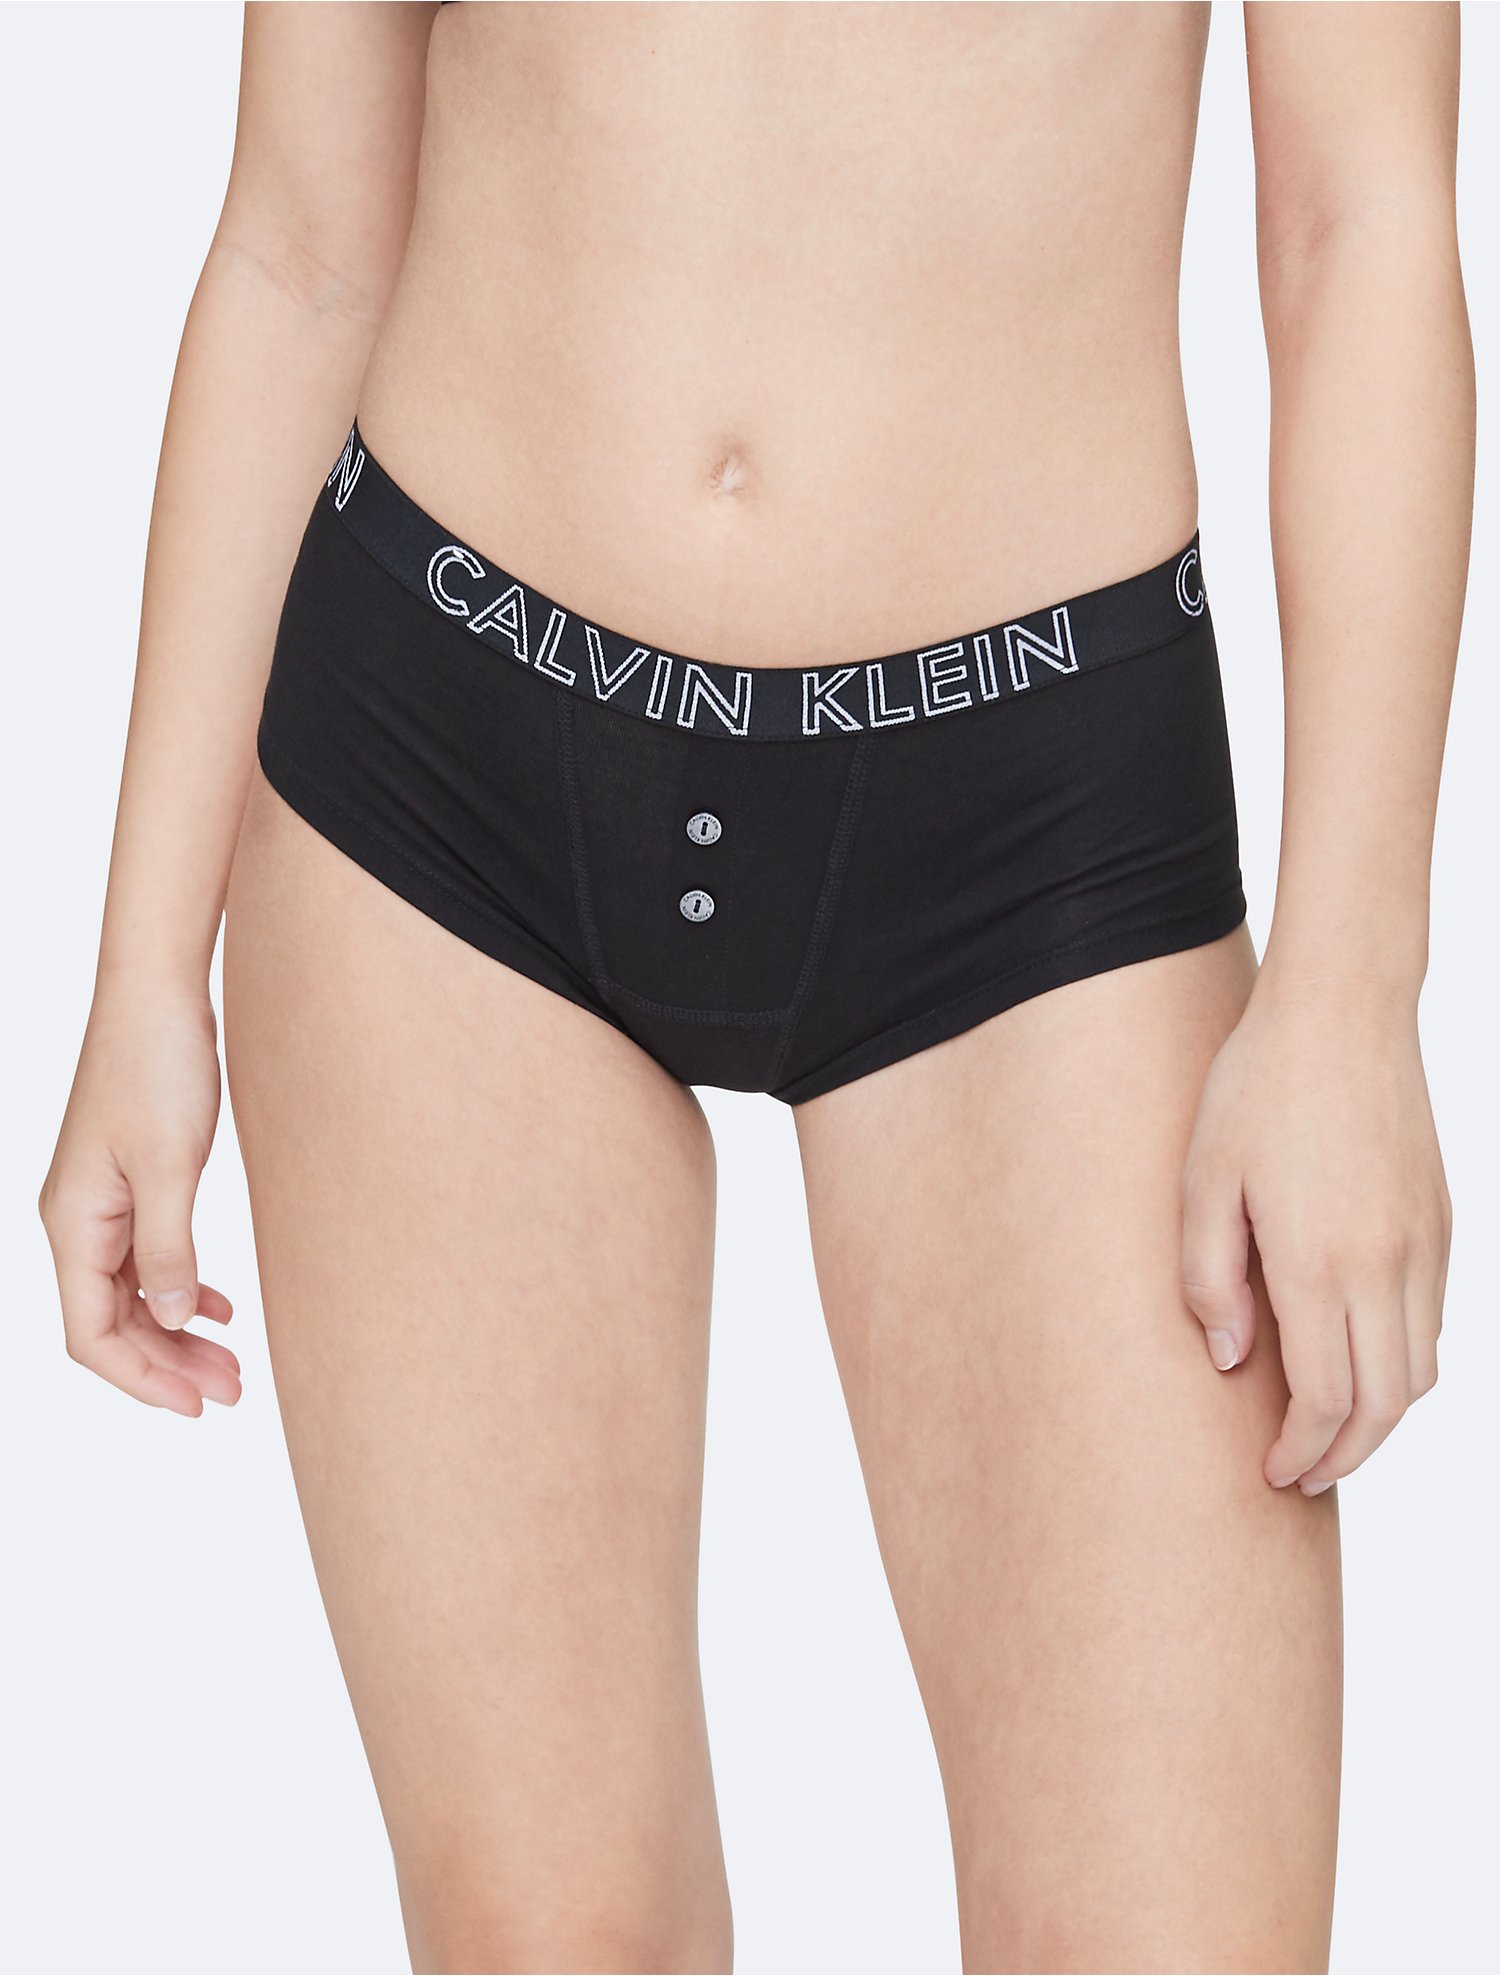 Descubrir 45+ imagen boyshort calvin klein womens underwear